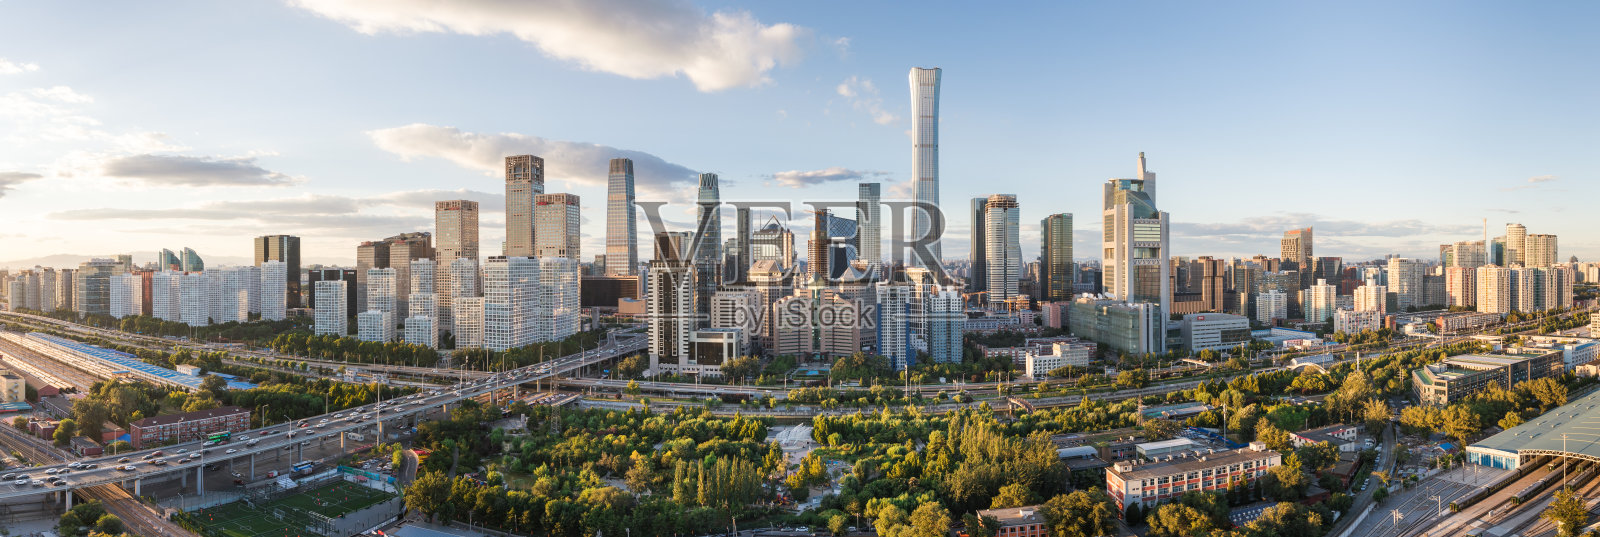 北京CBD全景照片摄影图片